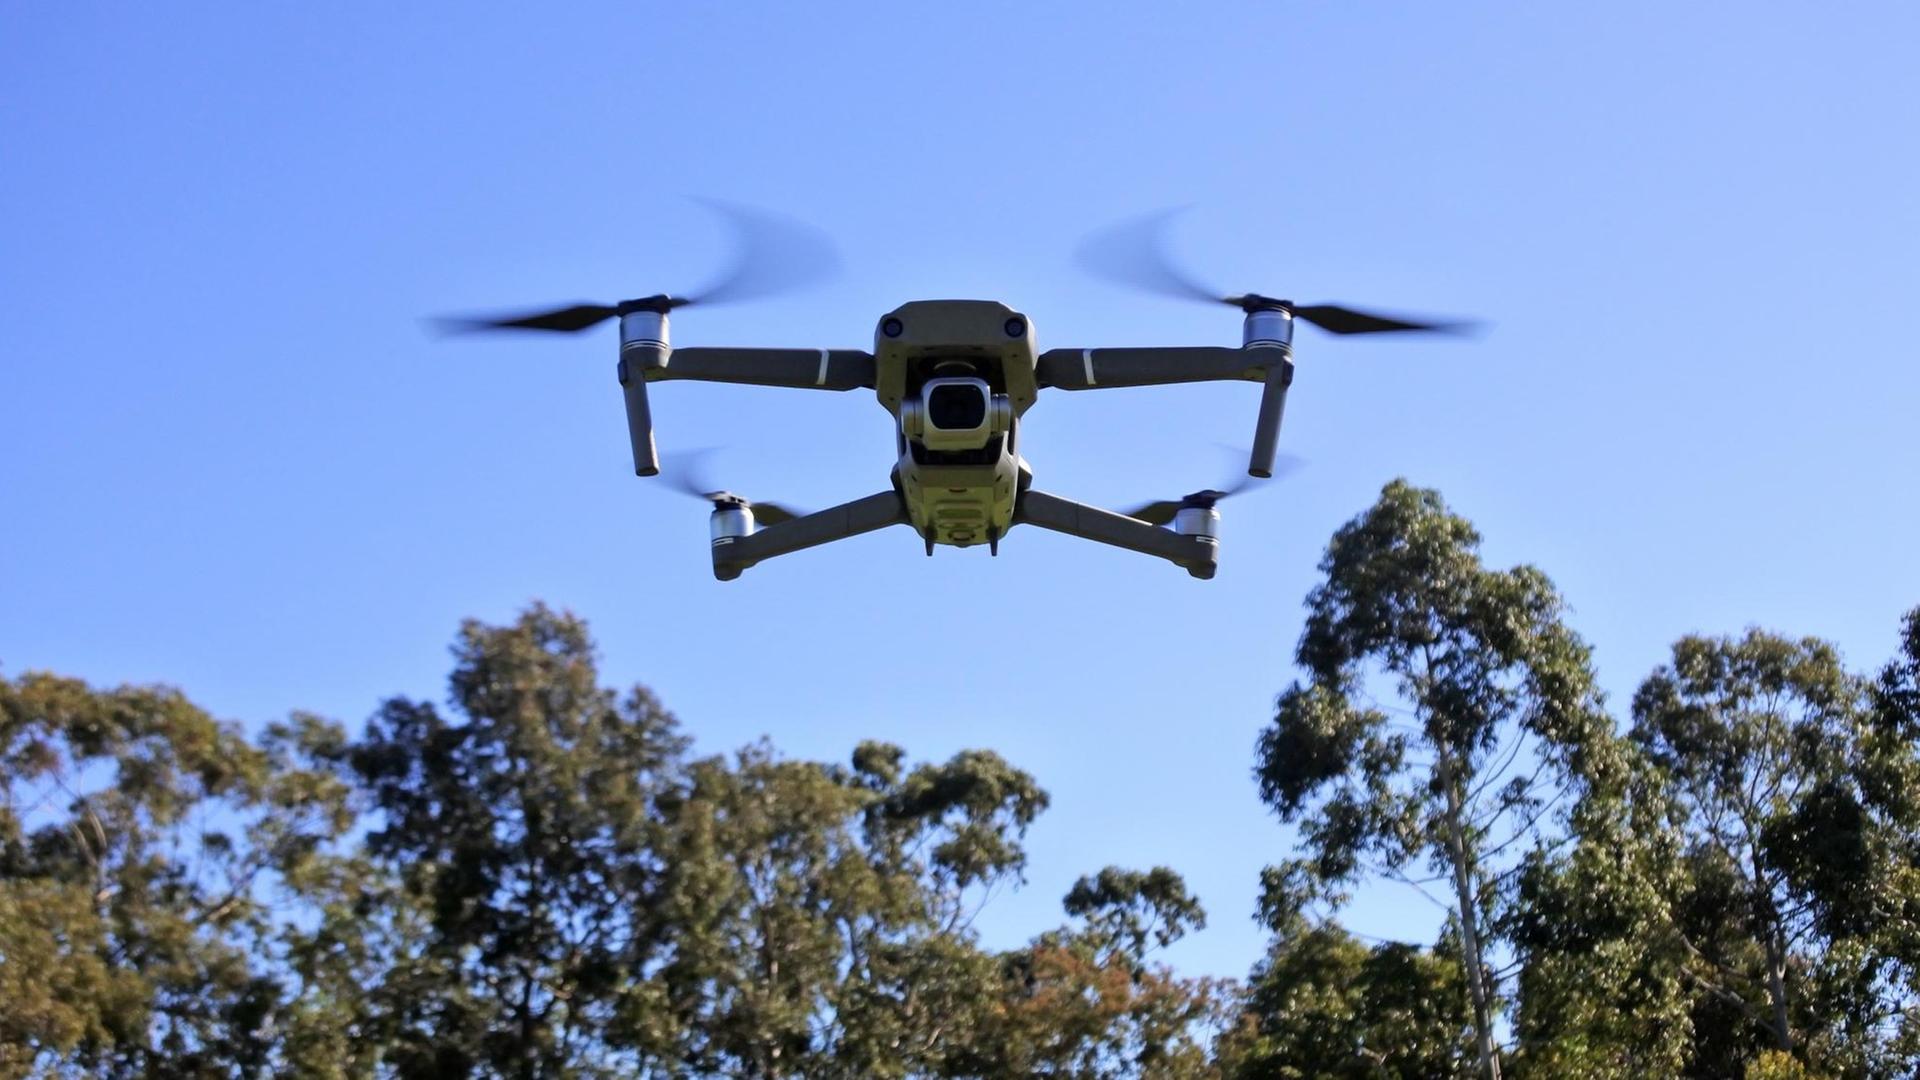 Ein unbemannter Flugkörper, eine so genannte Drohne, fliegt über einige Bäume hinweg.